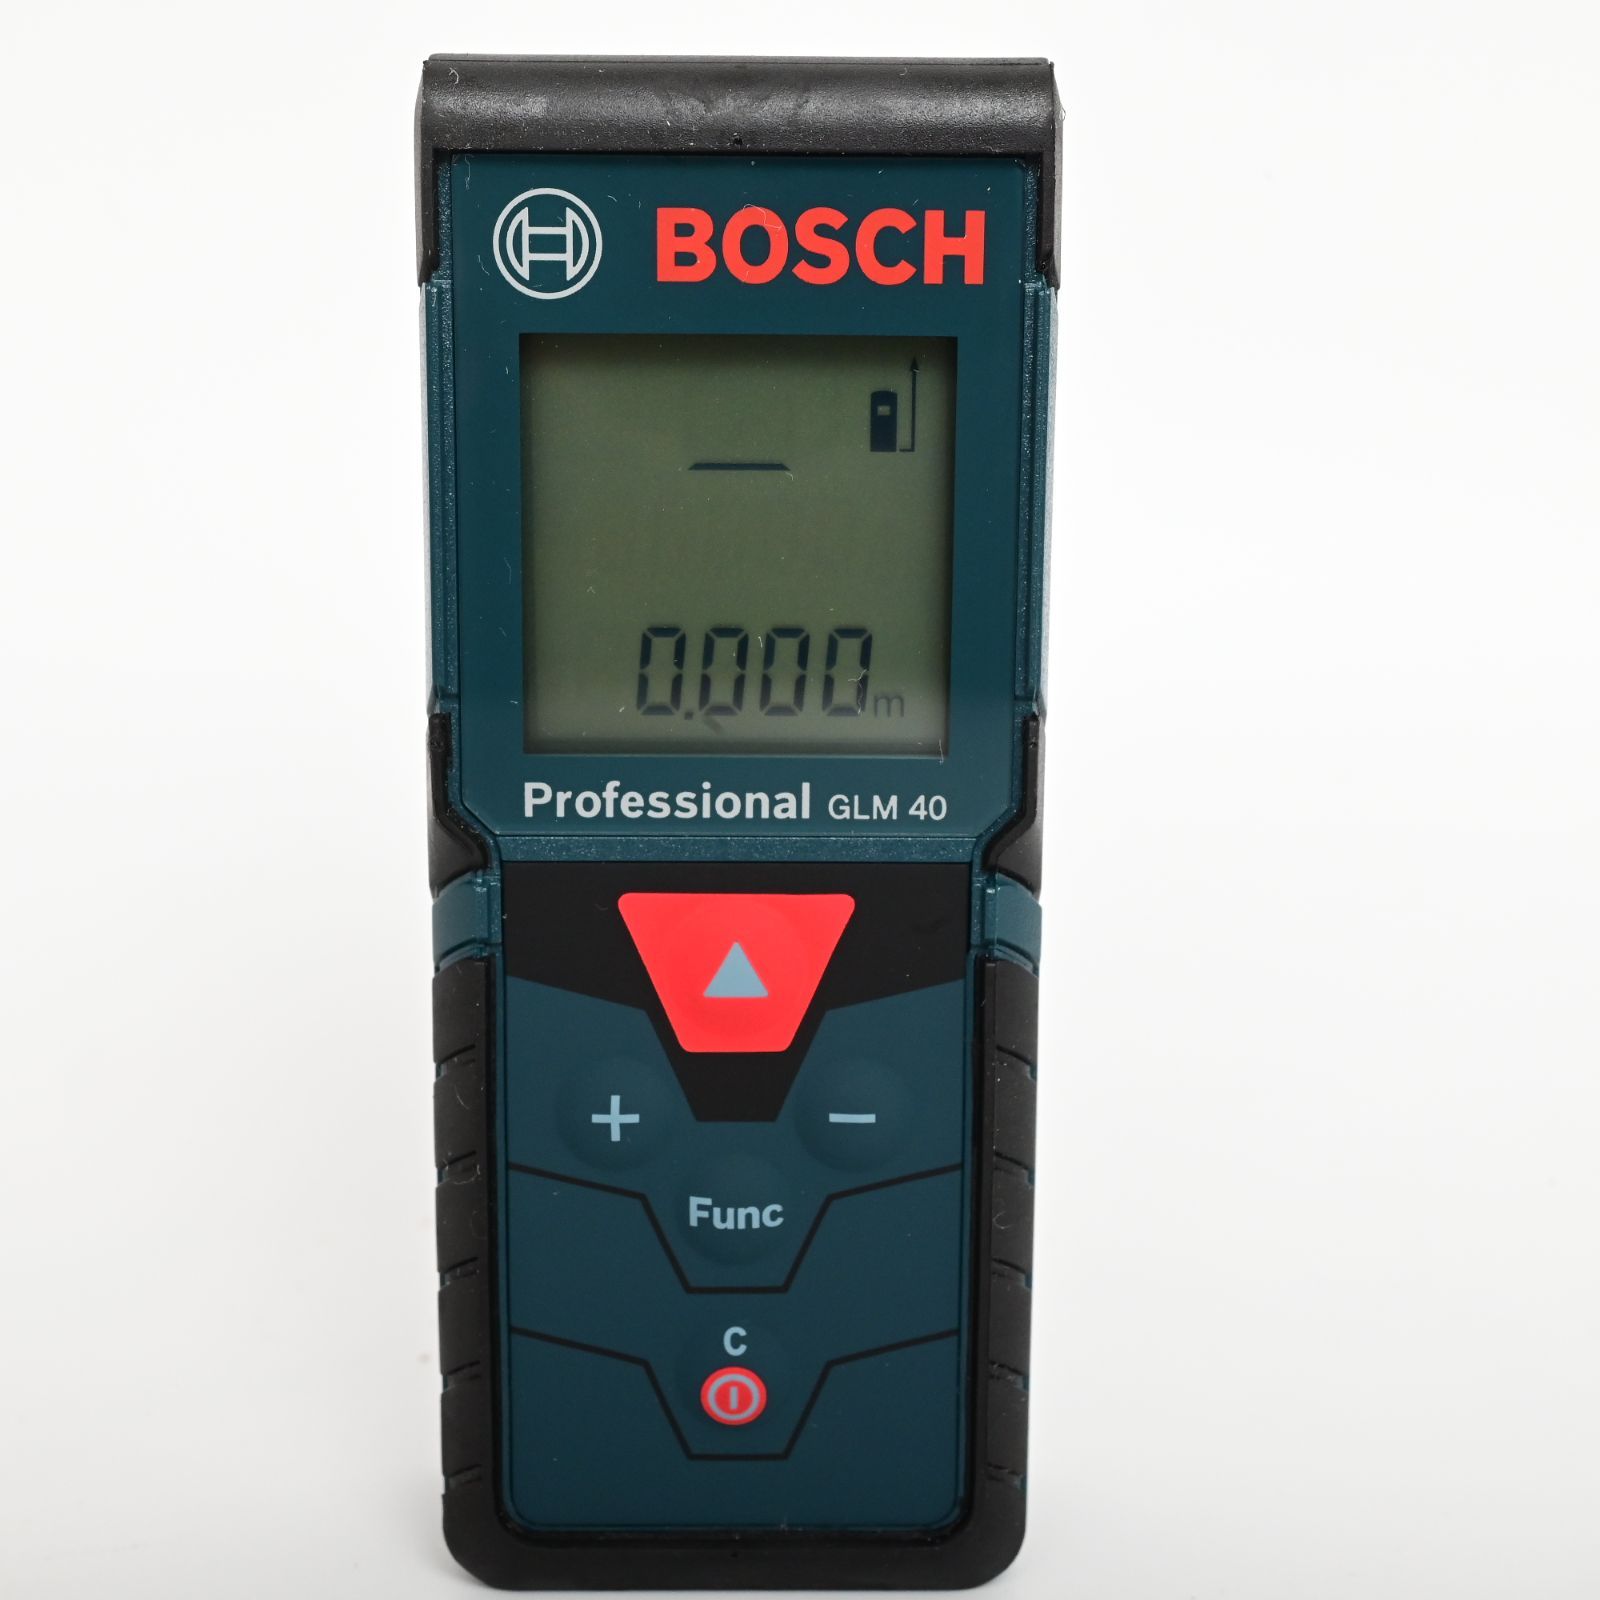 レーザー距離計 GLM40 Professional(ボッシュ) 【正規品】 Bosch